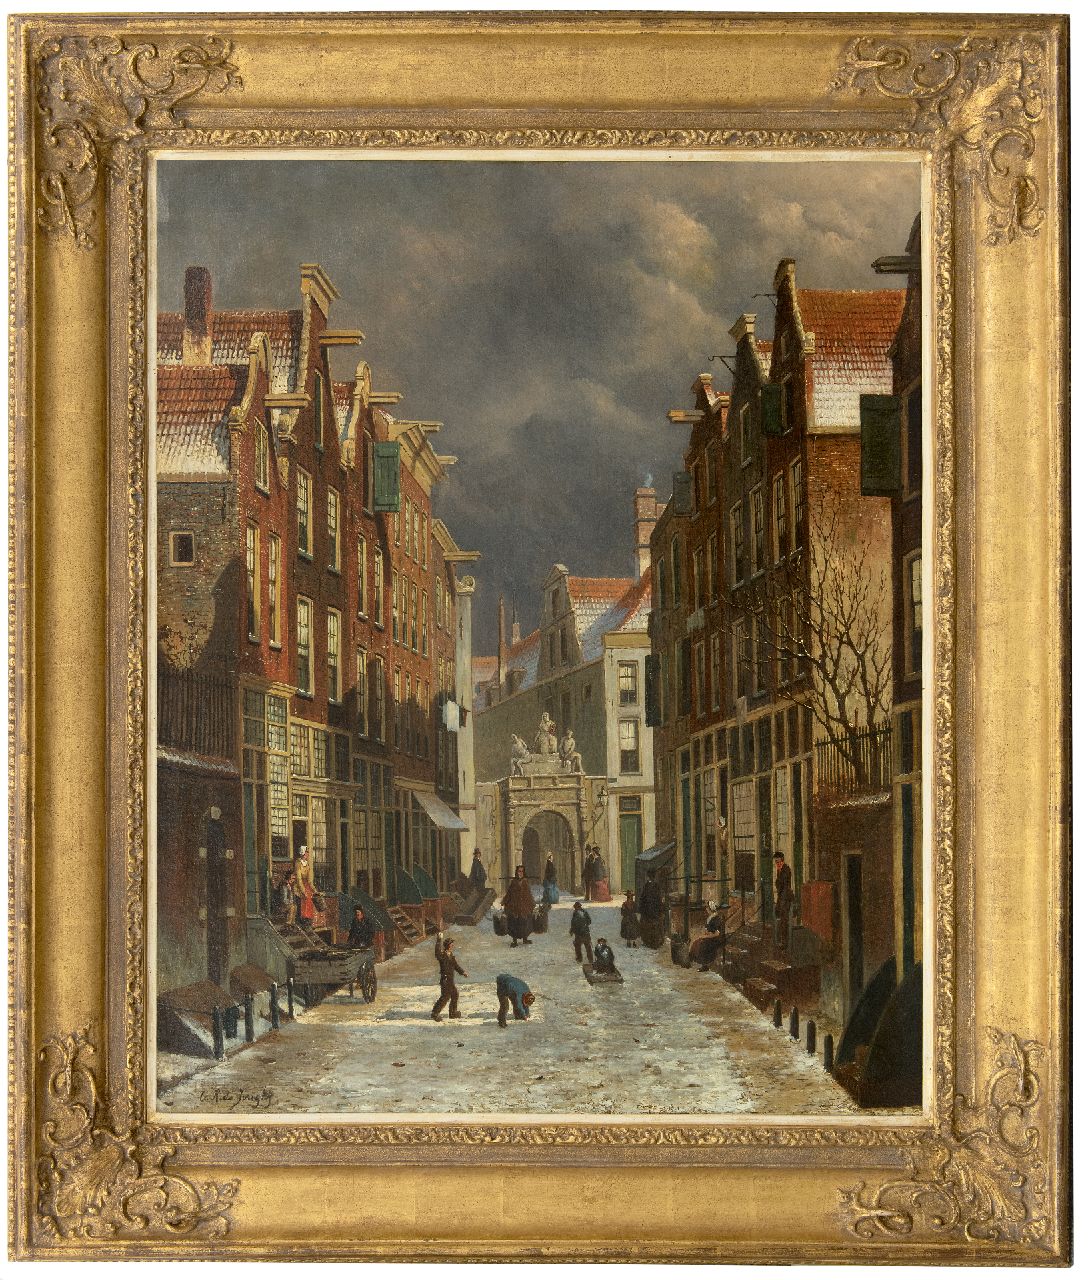 Jongh O.R. de | Oene Romkes de Jongh, Gezicht op de Voetboogstraat met de Rasphuispoort, Amsterdam, olieverf op doek 86,8 x 70,4 cm, gesigneerd linksonder